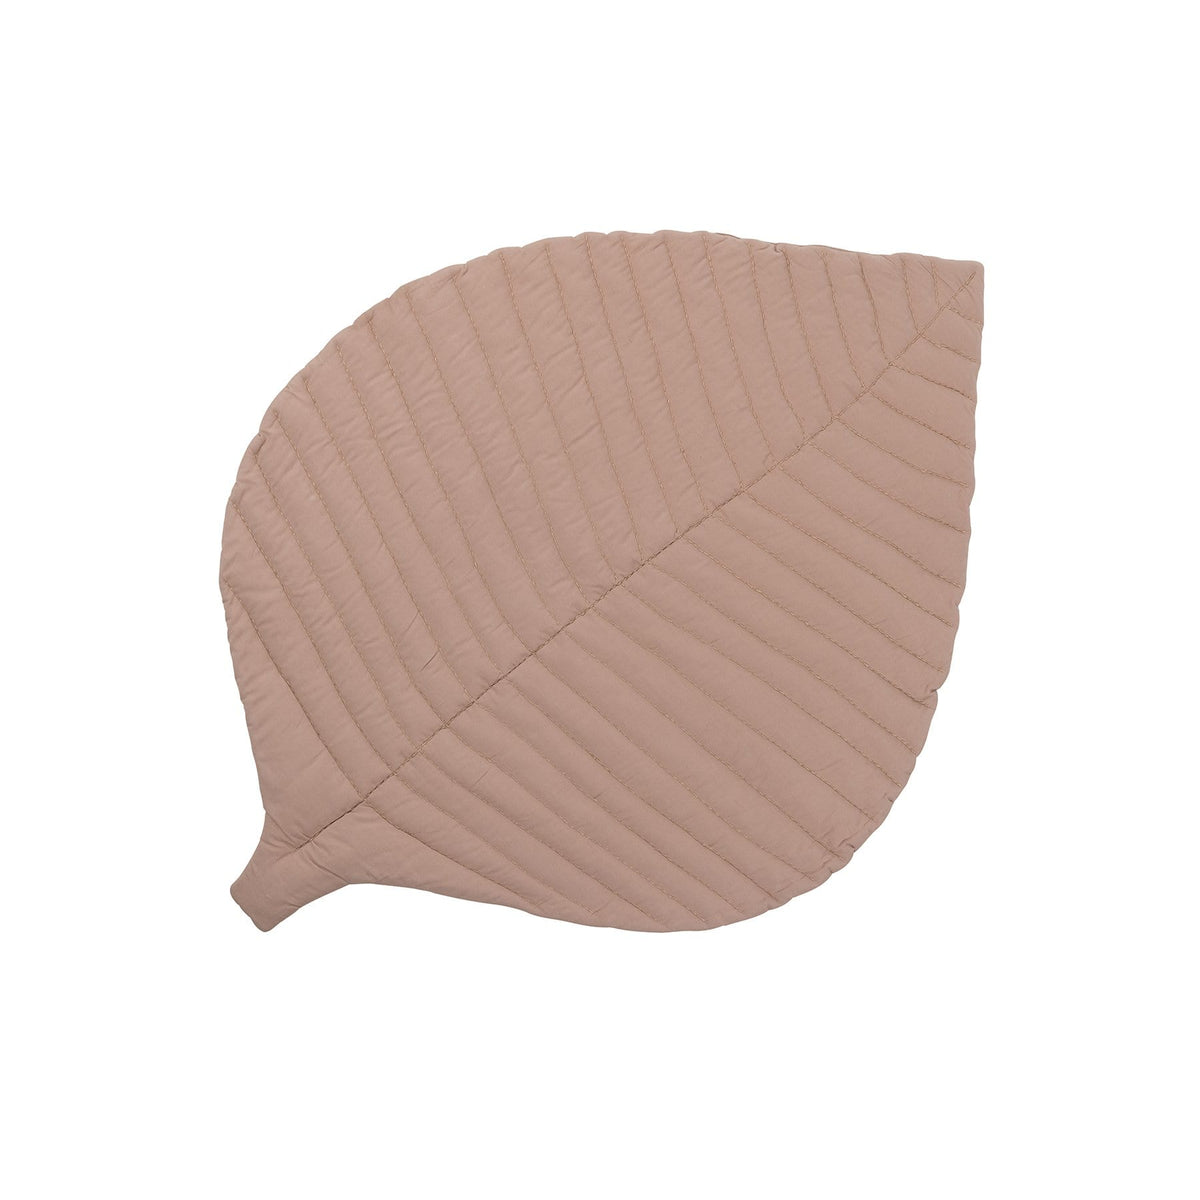 Organic Leaf Mat